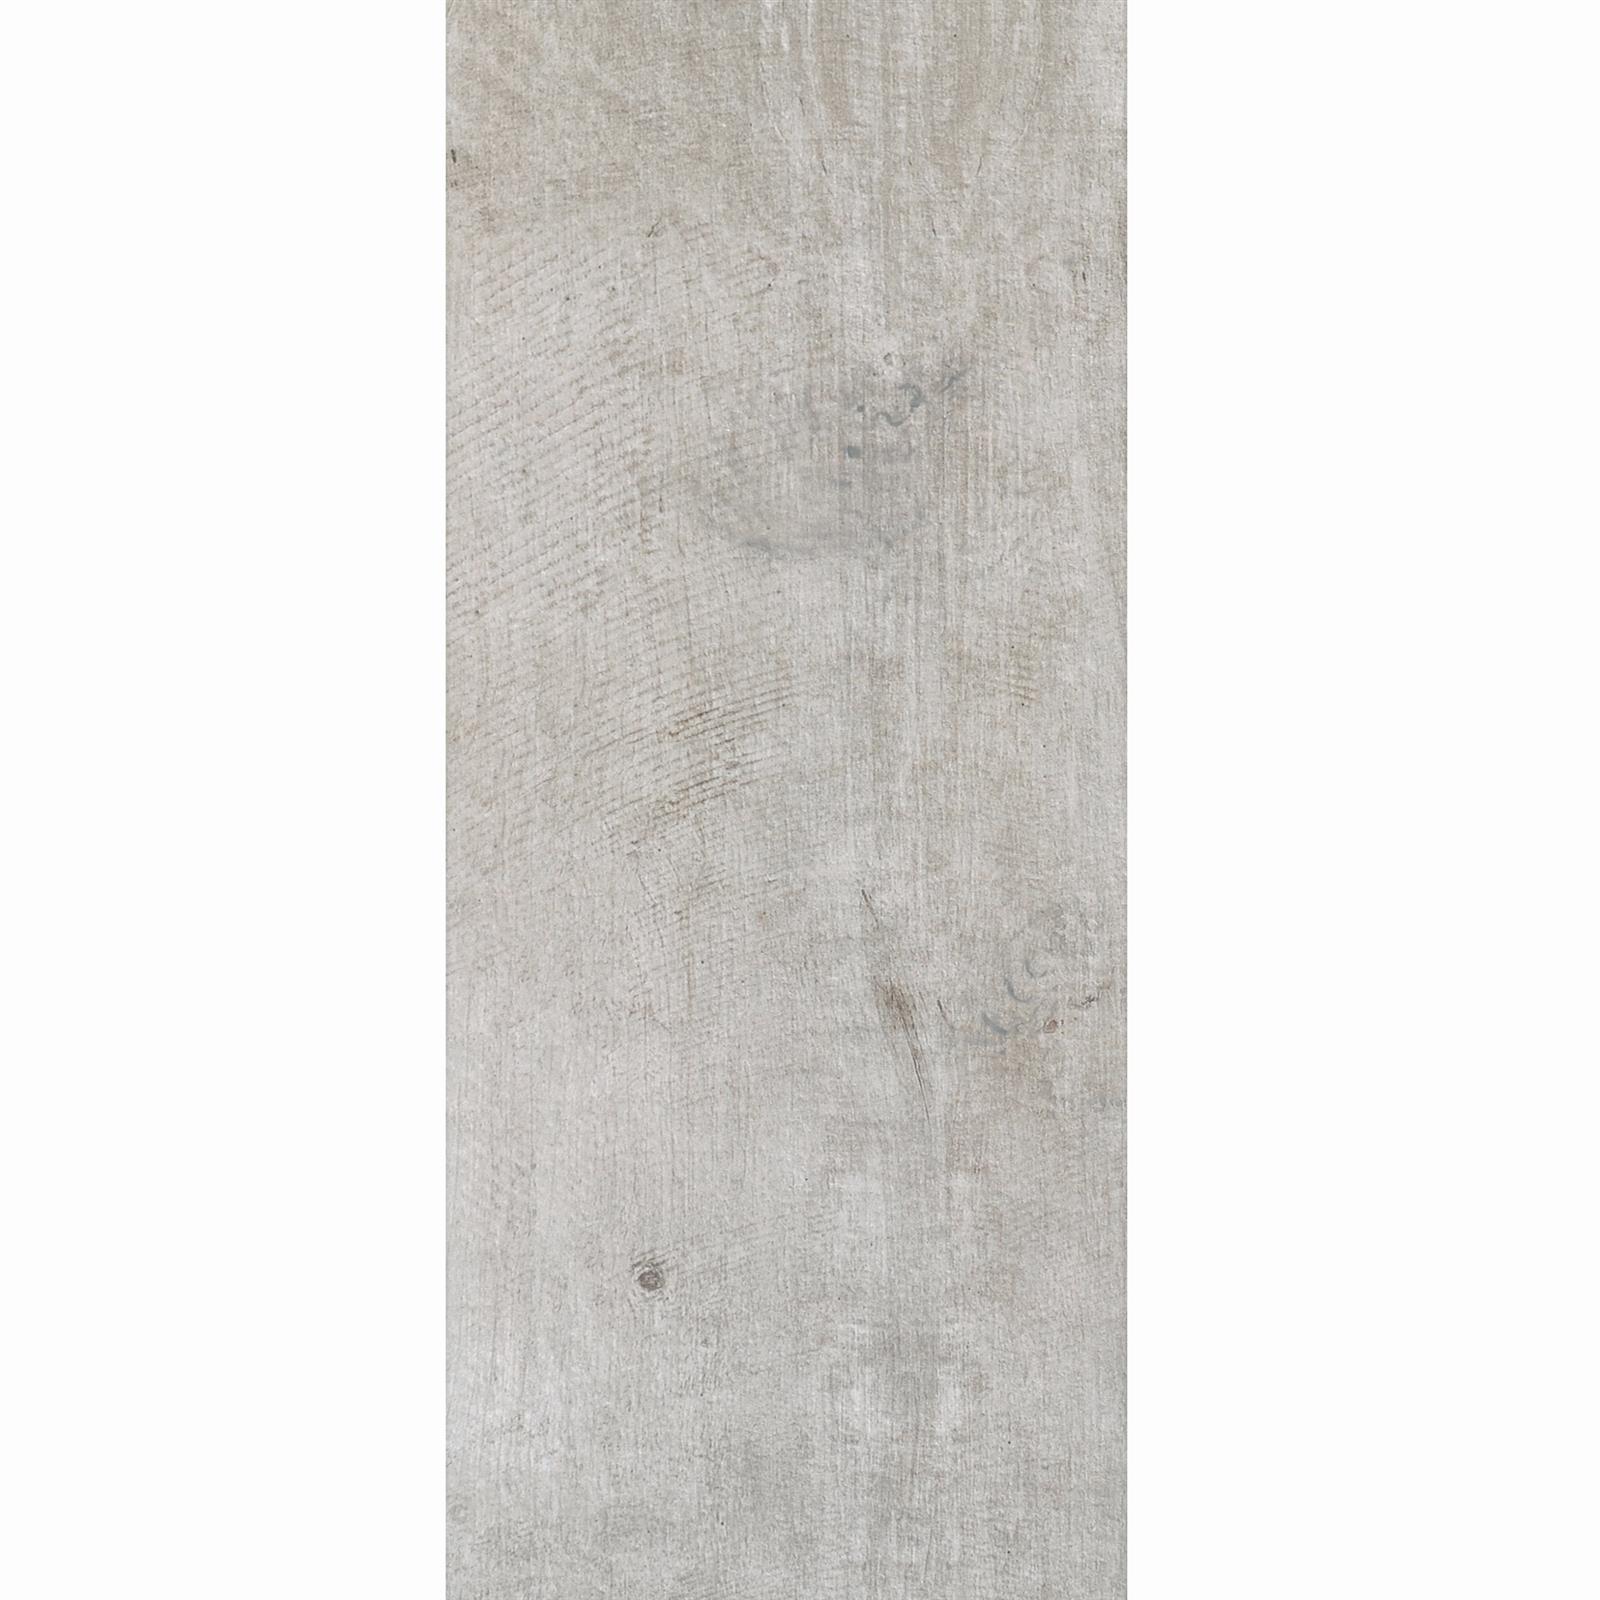 Taras Płyta Keystone Wygląd Drewna 30x120cm Grau